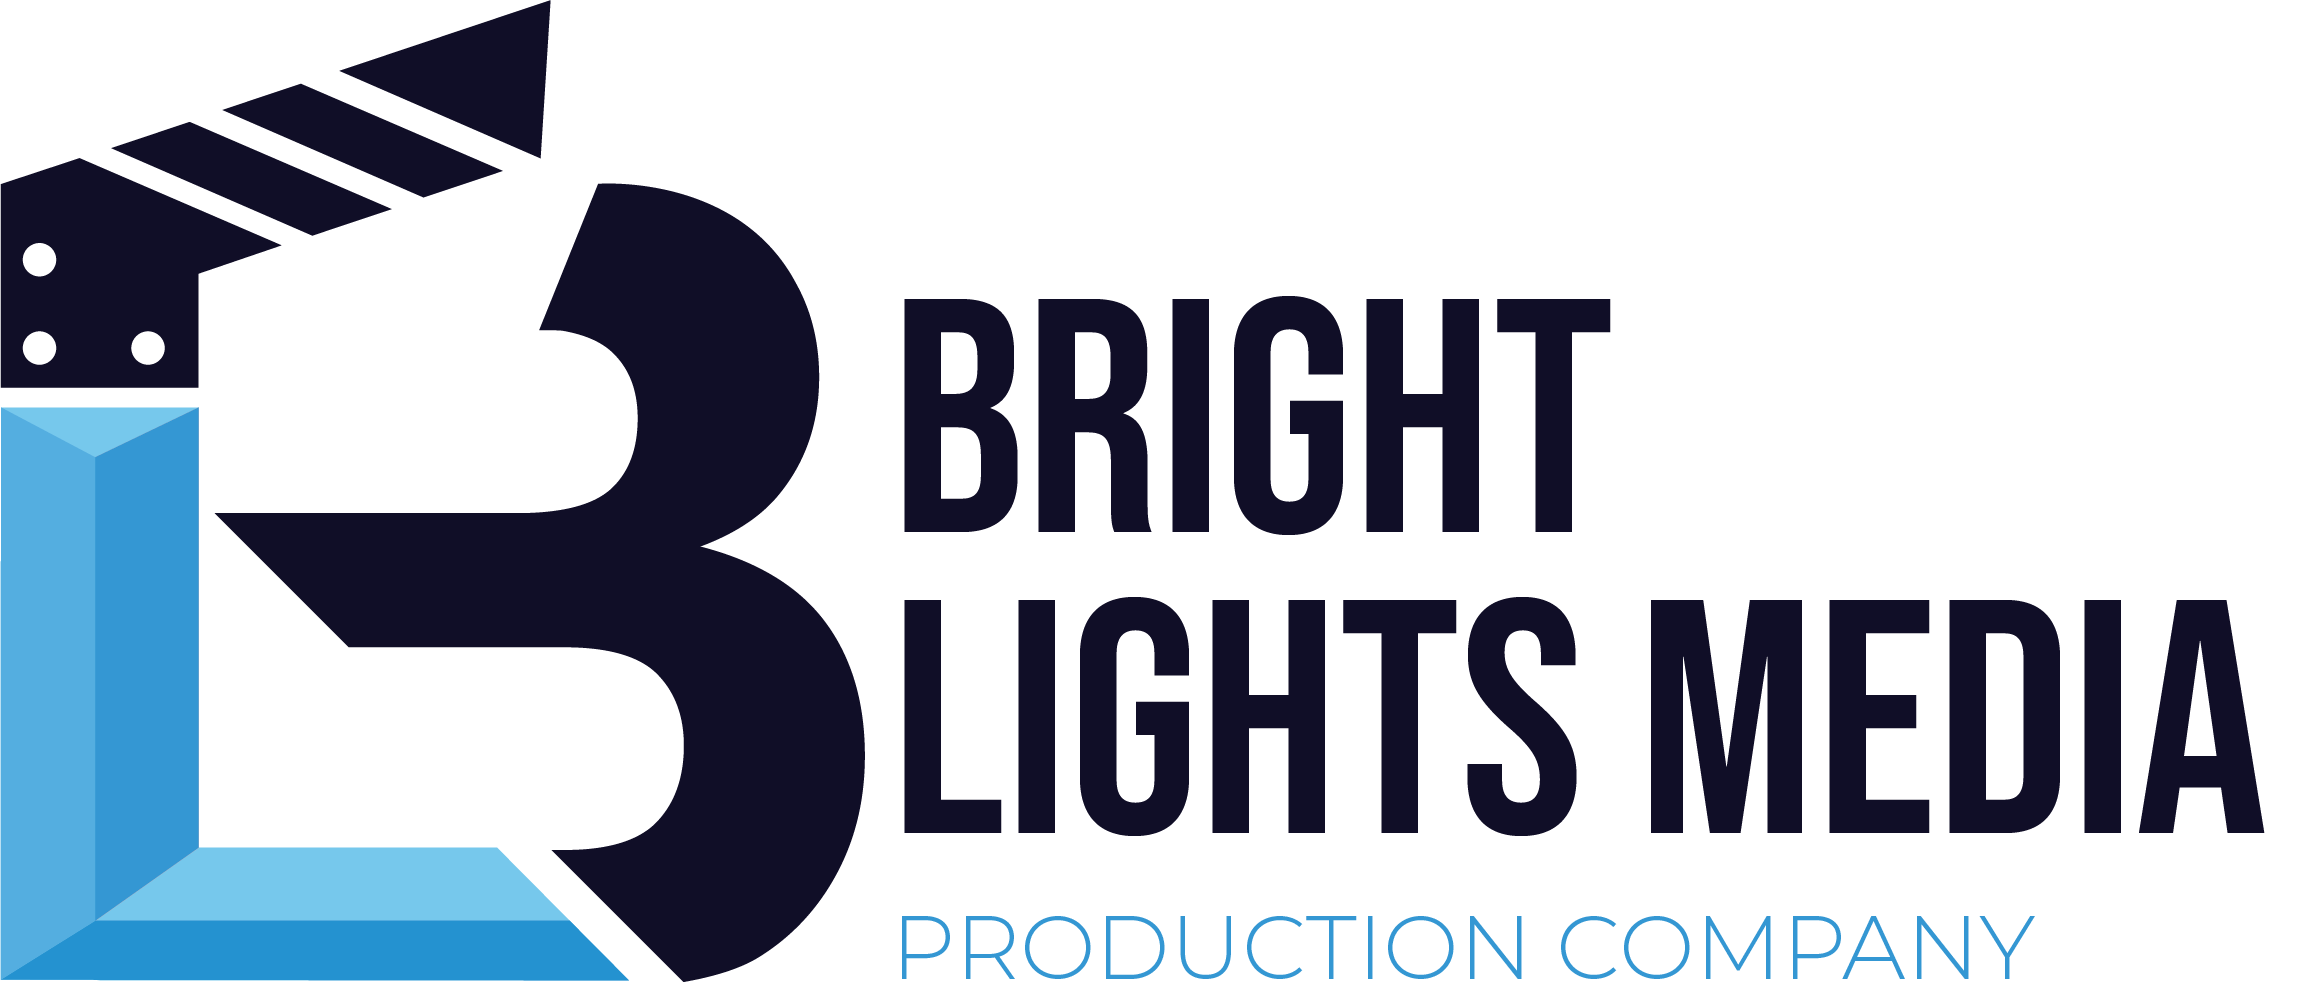 Bright Lights Media LLC 